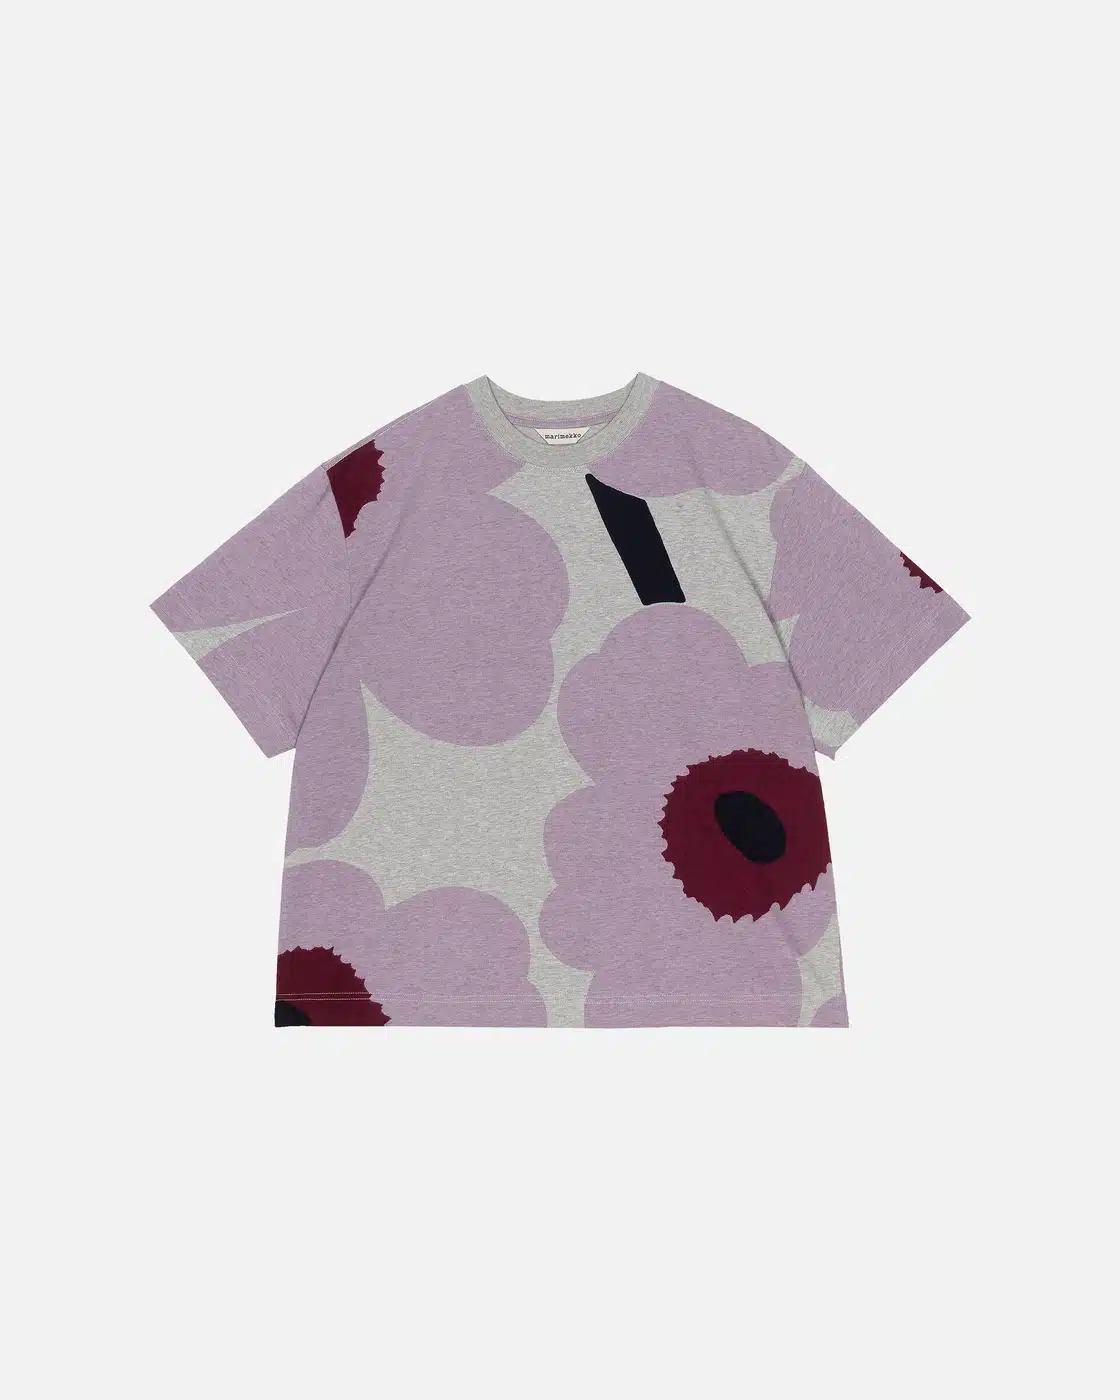 Marimekko Mika Piirainen Abstract Design Pink T-shirt. Size: XL 